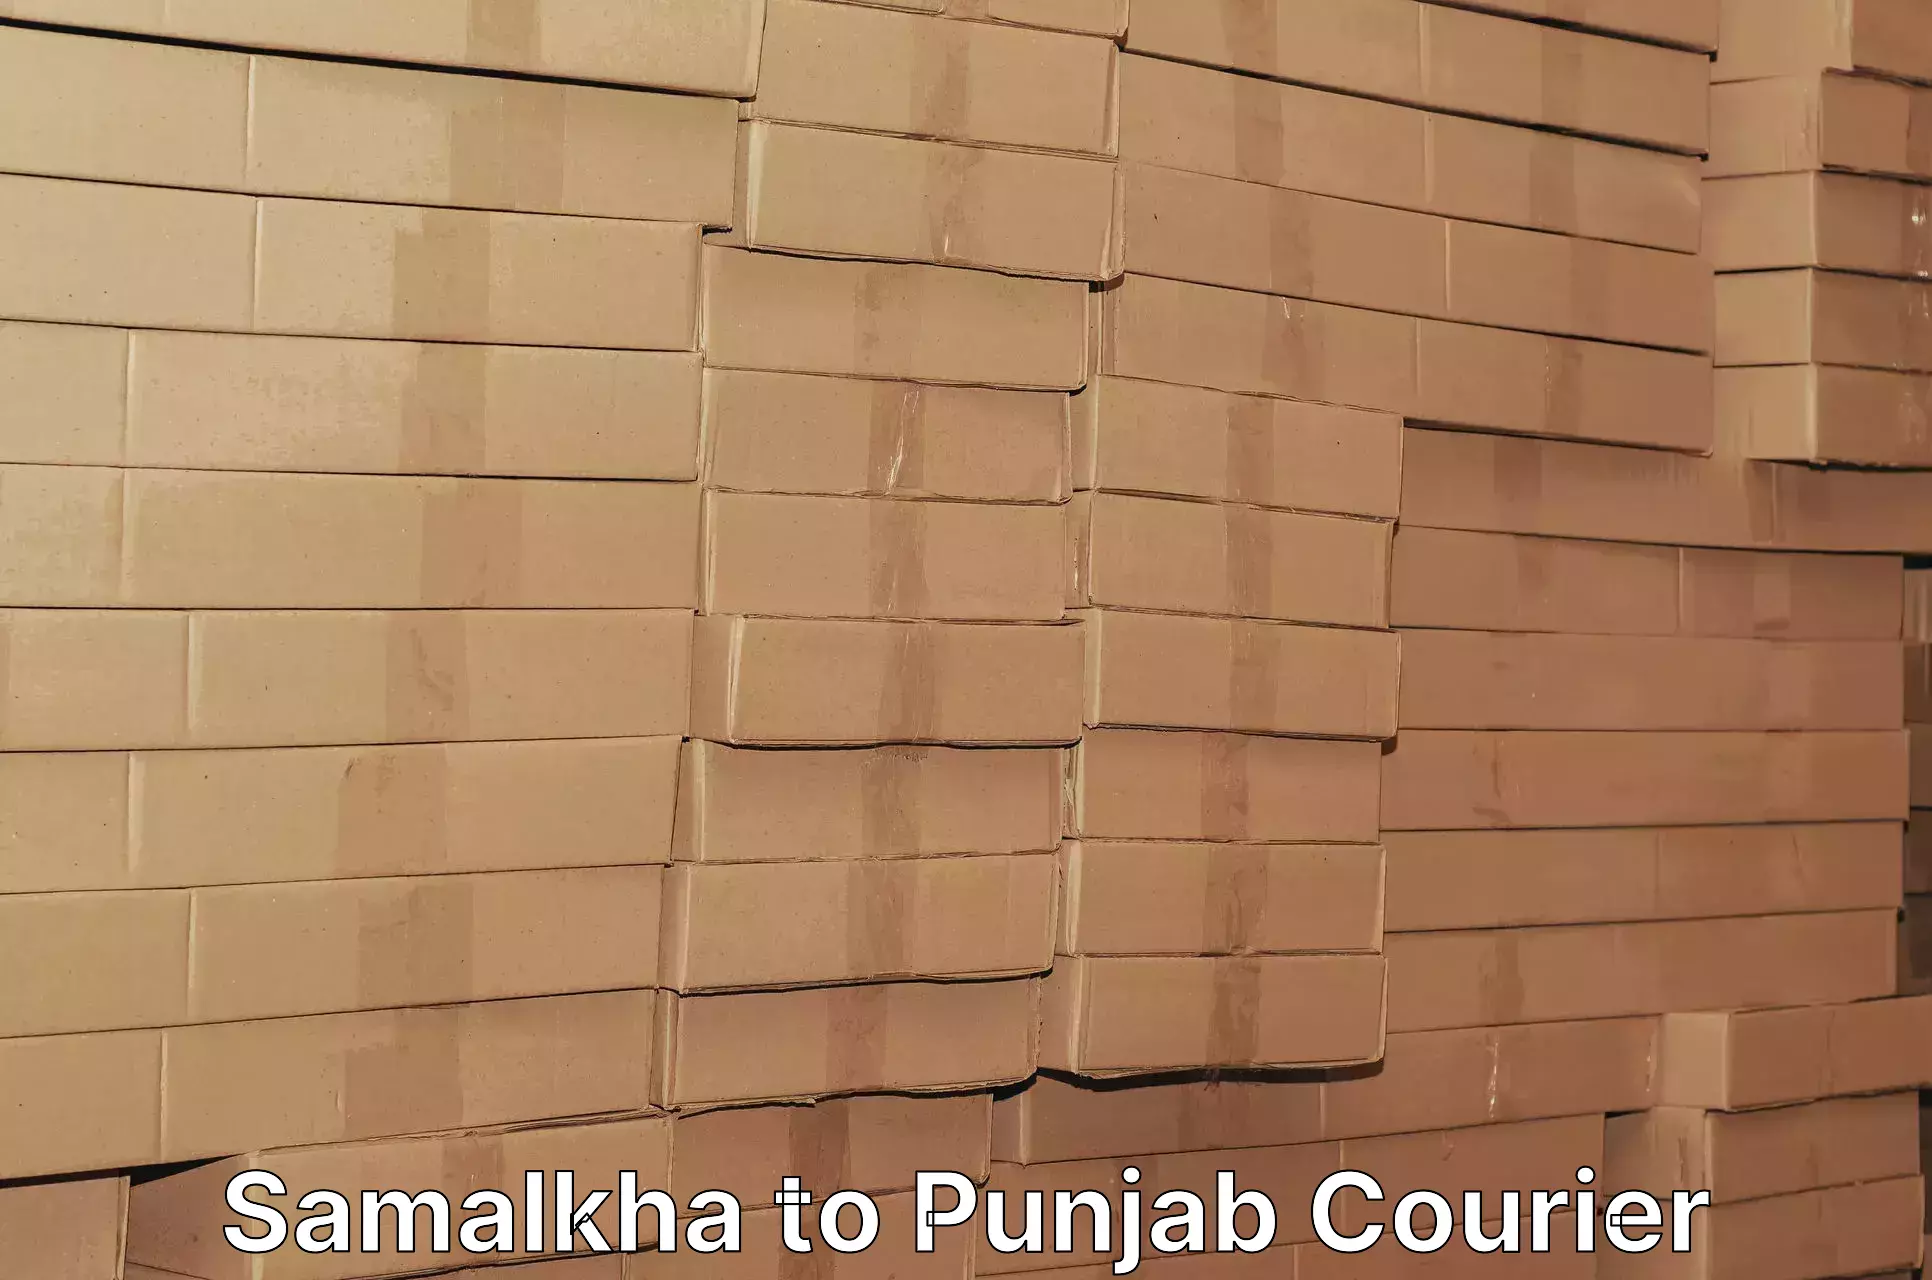 Customized shipping options in Samalkha to Punjab